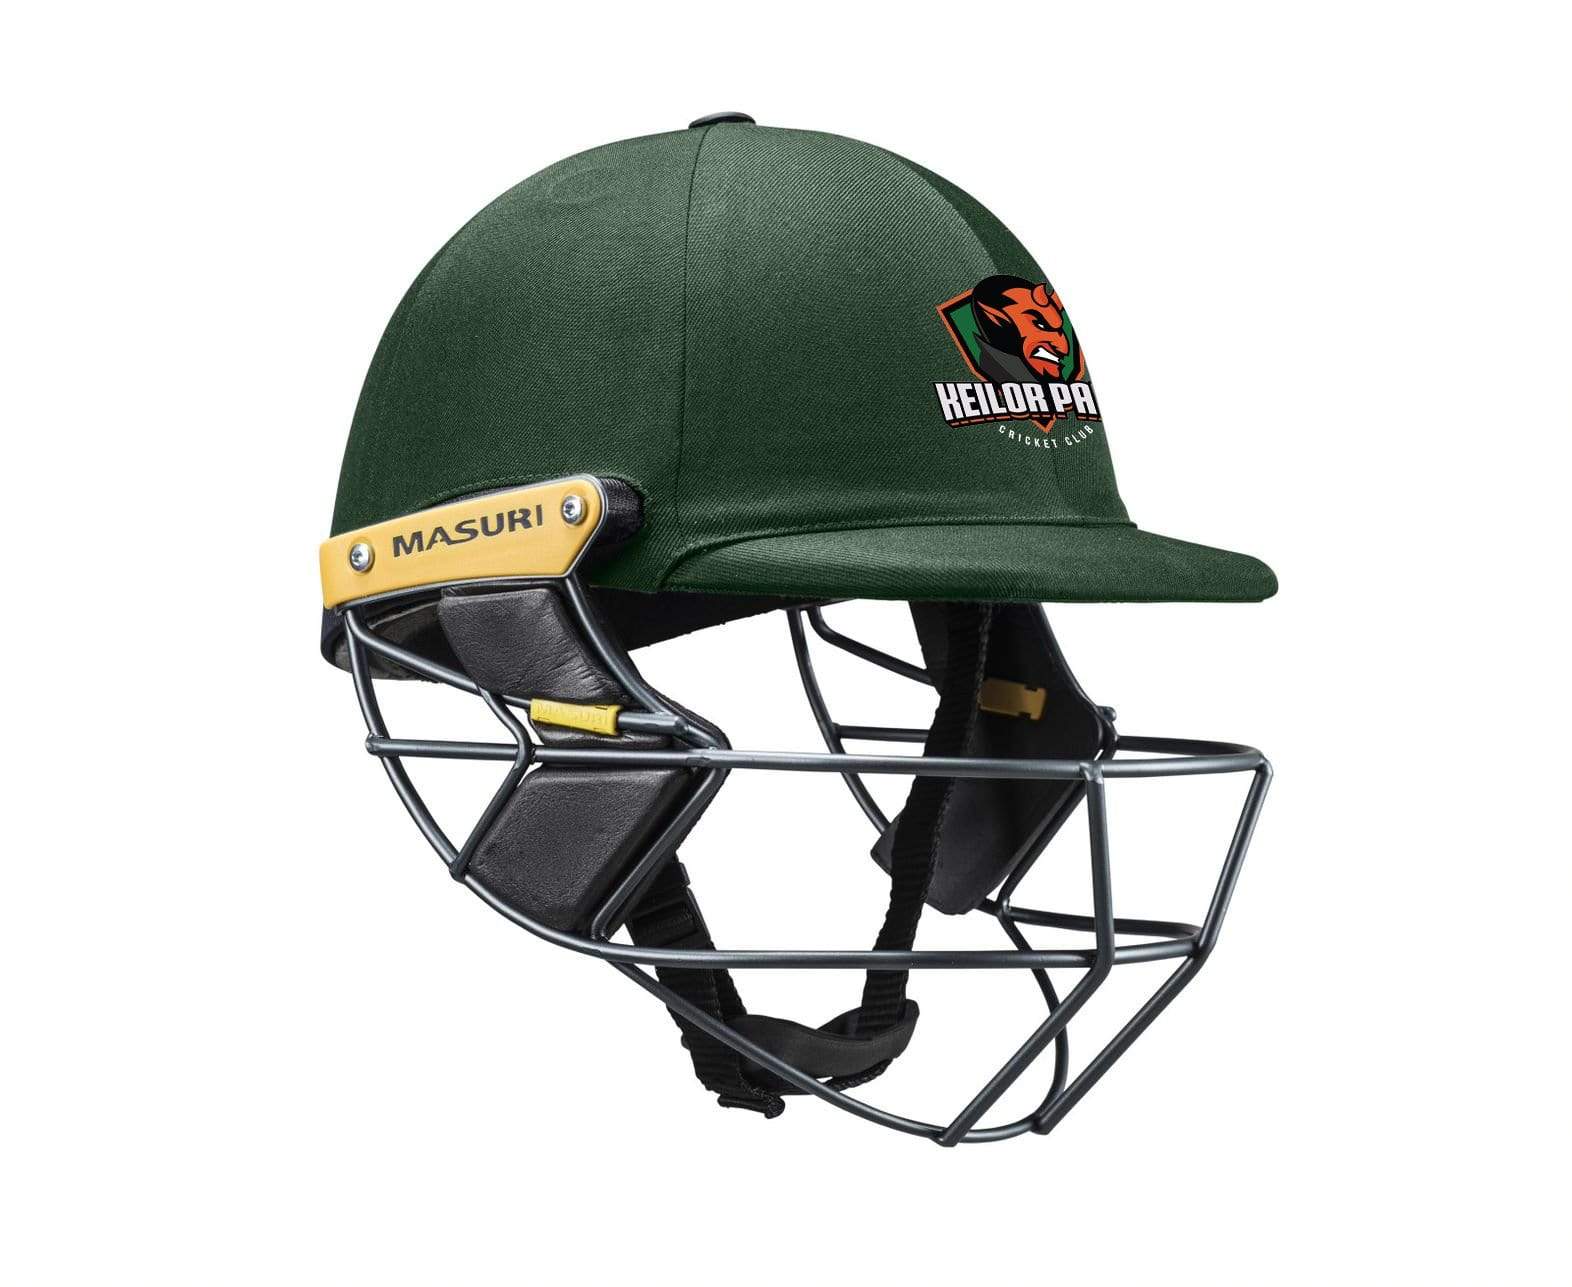 Masuri Club Helmet Keilor Park Cricket Club Helmet